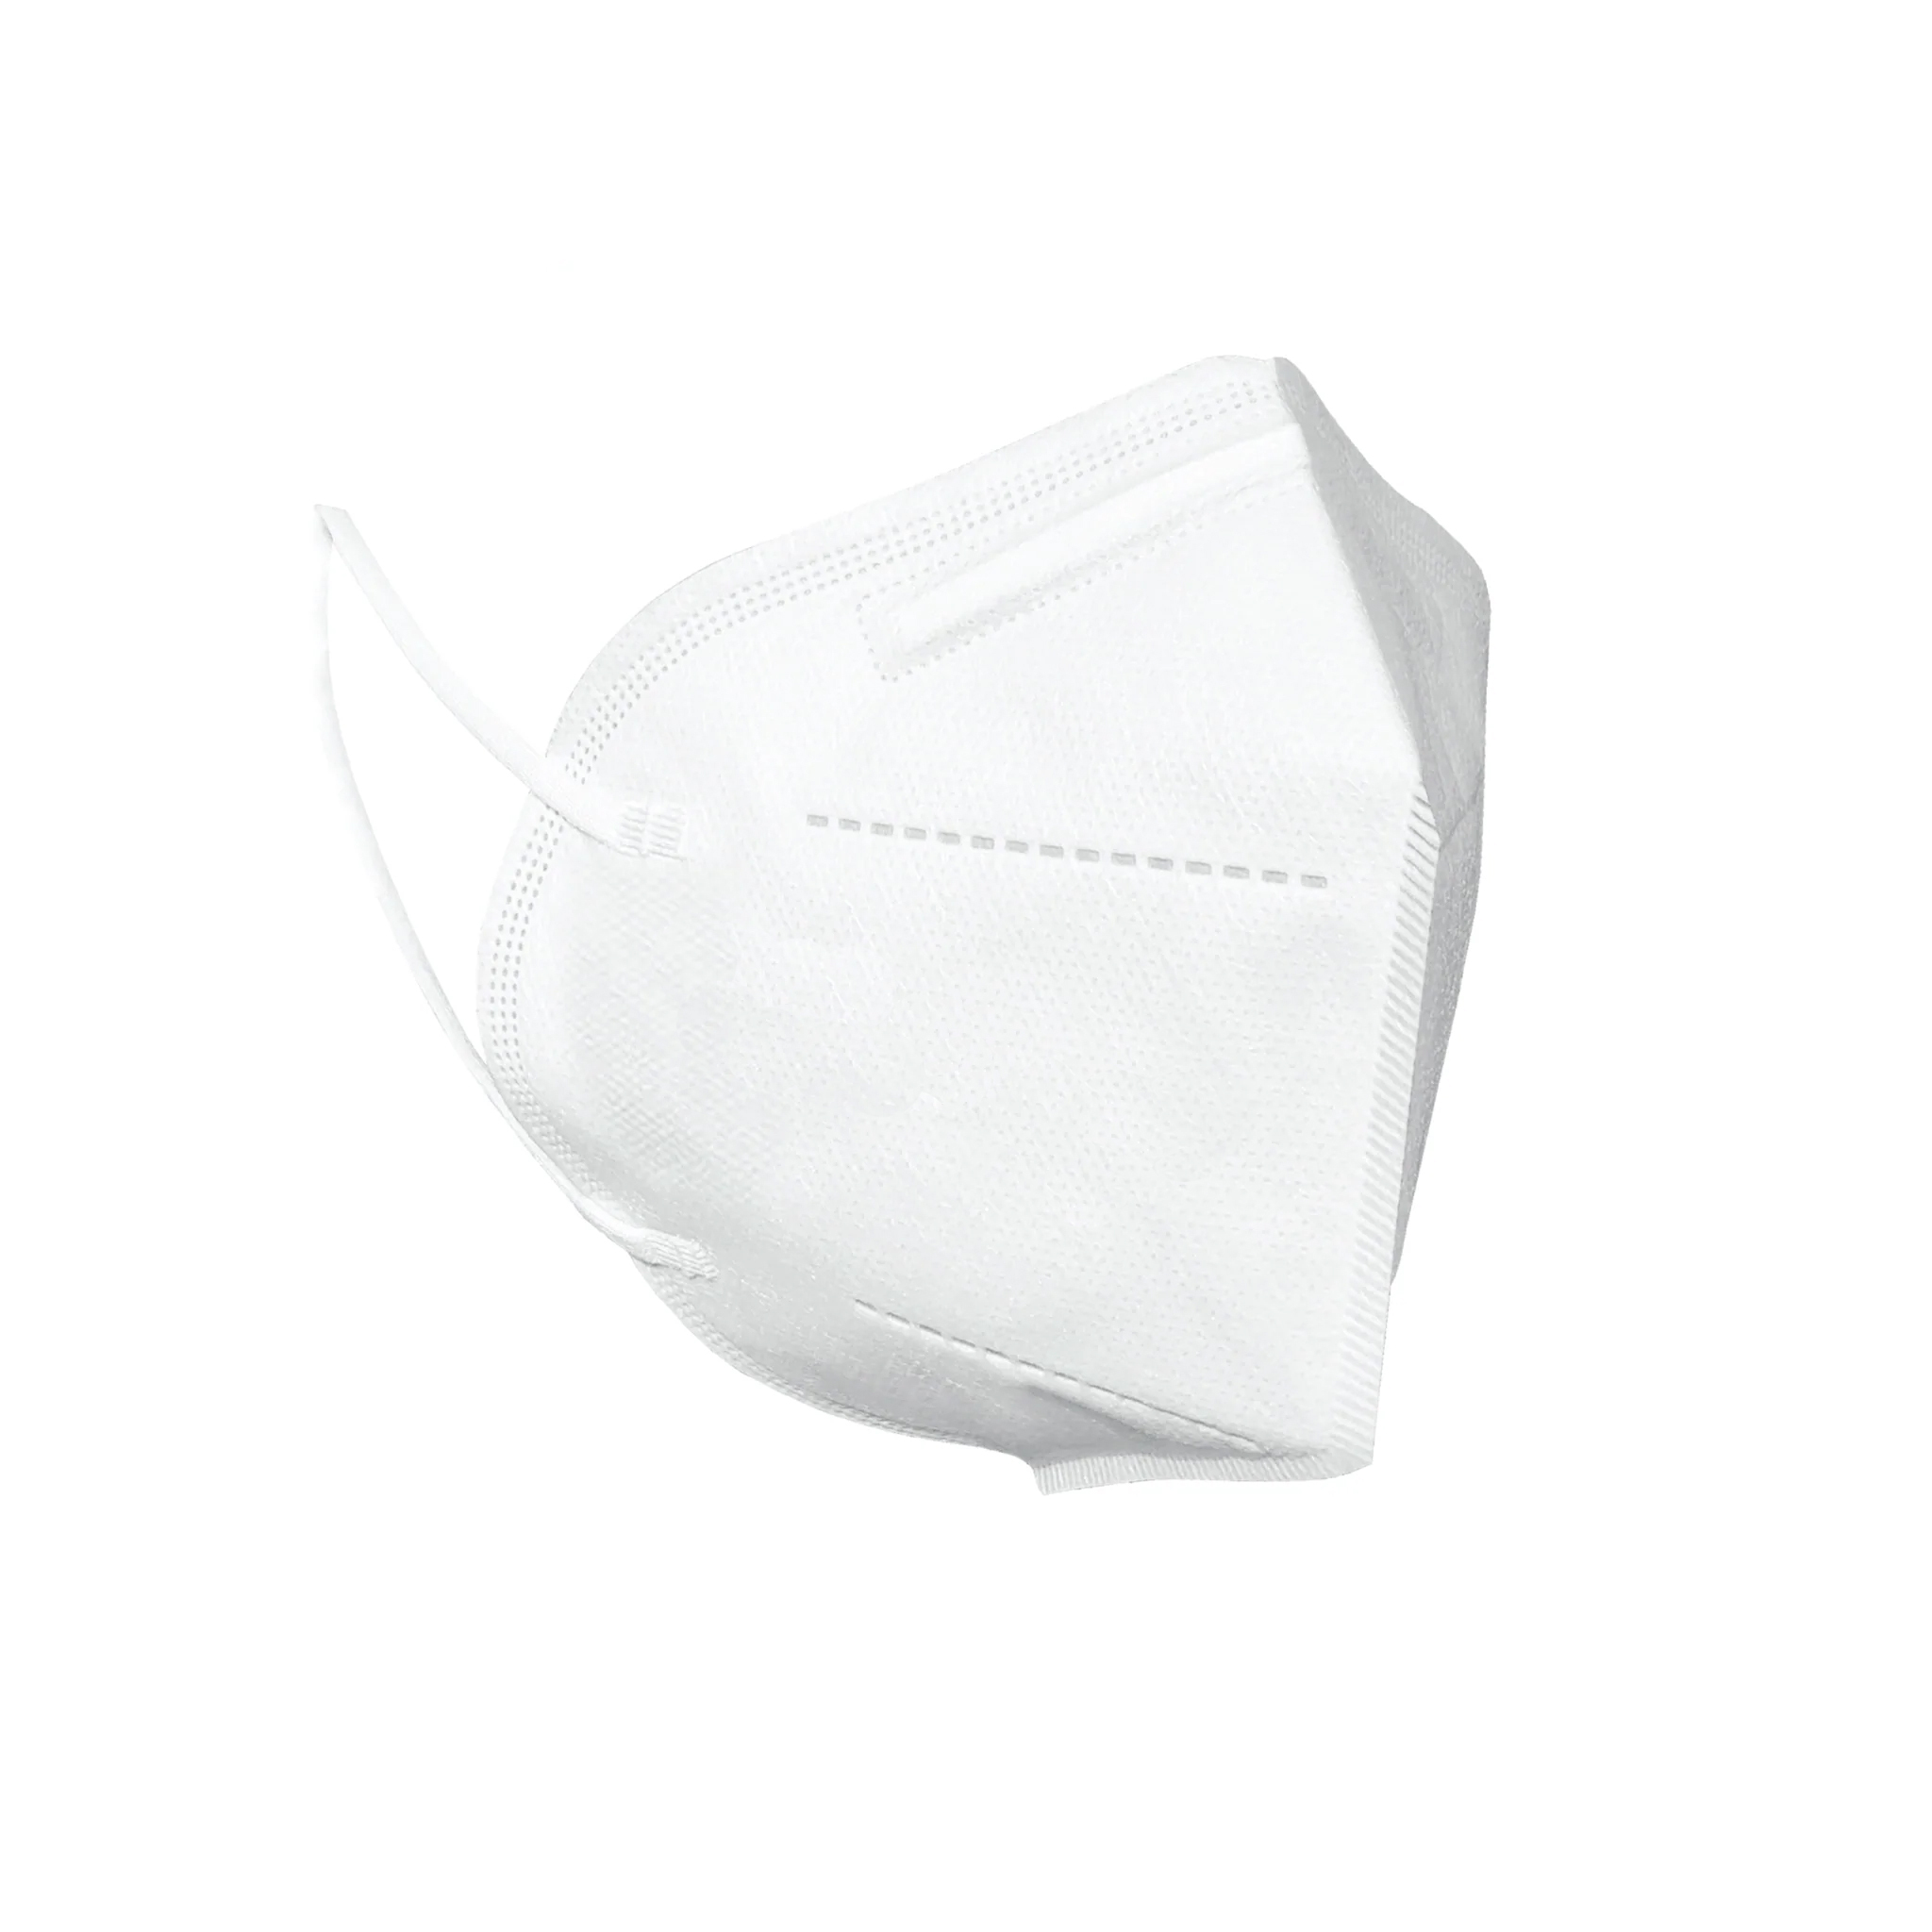 LOT de 10 Masques de groupe de santé Pince nasale réglable FFP2 NR, approuvé CE 0161 CAT III, UNE-EN 149: 2001 + A1: 2009 Règlement FFP2, couleur blanc